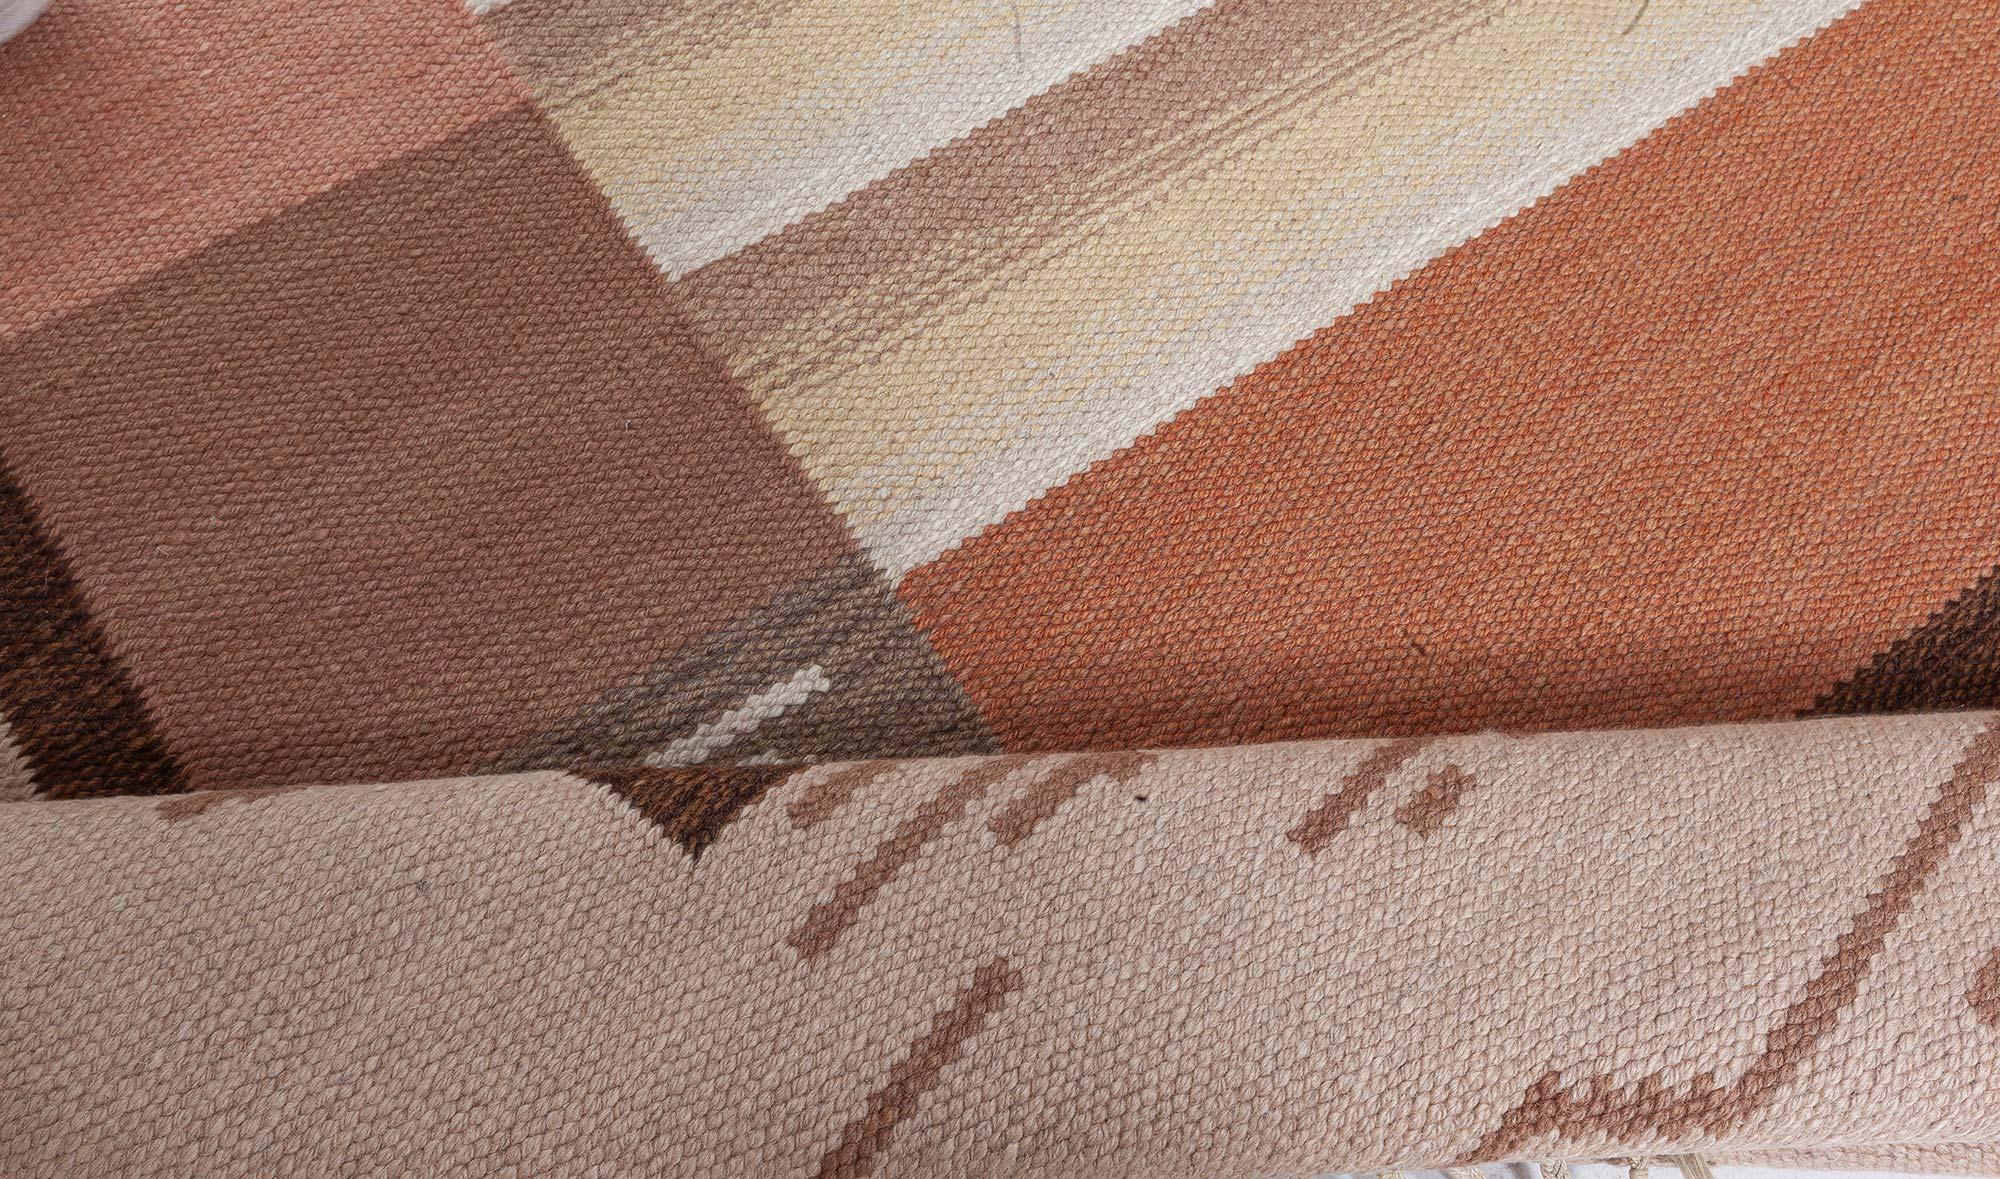 Flach gewebter Finnland-Teppich von Margareta Ahlstedt Willandt
Größe: 6'10